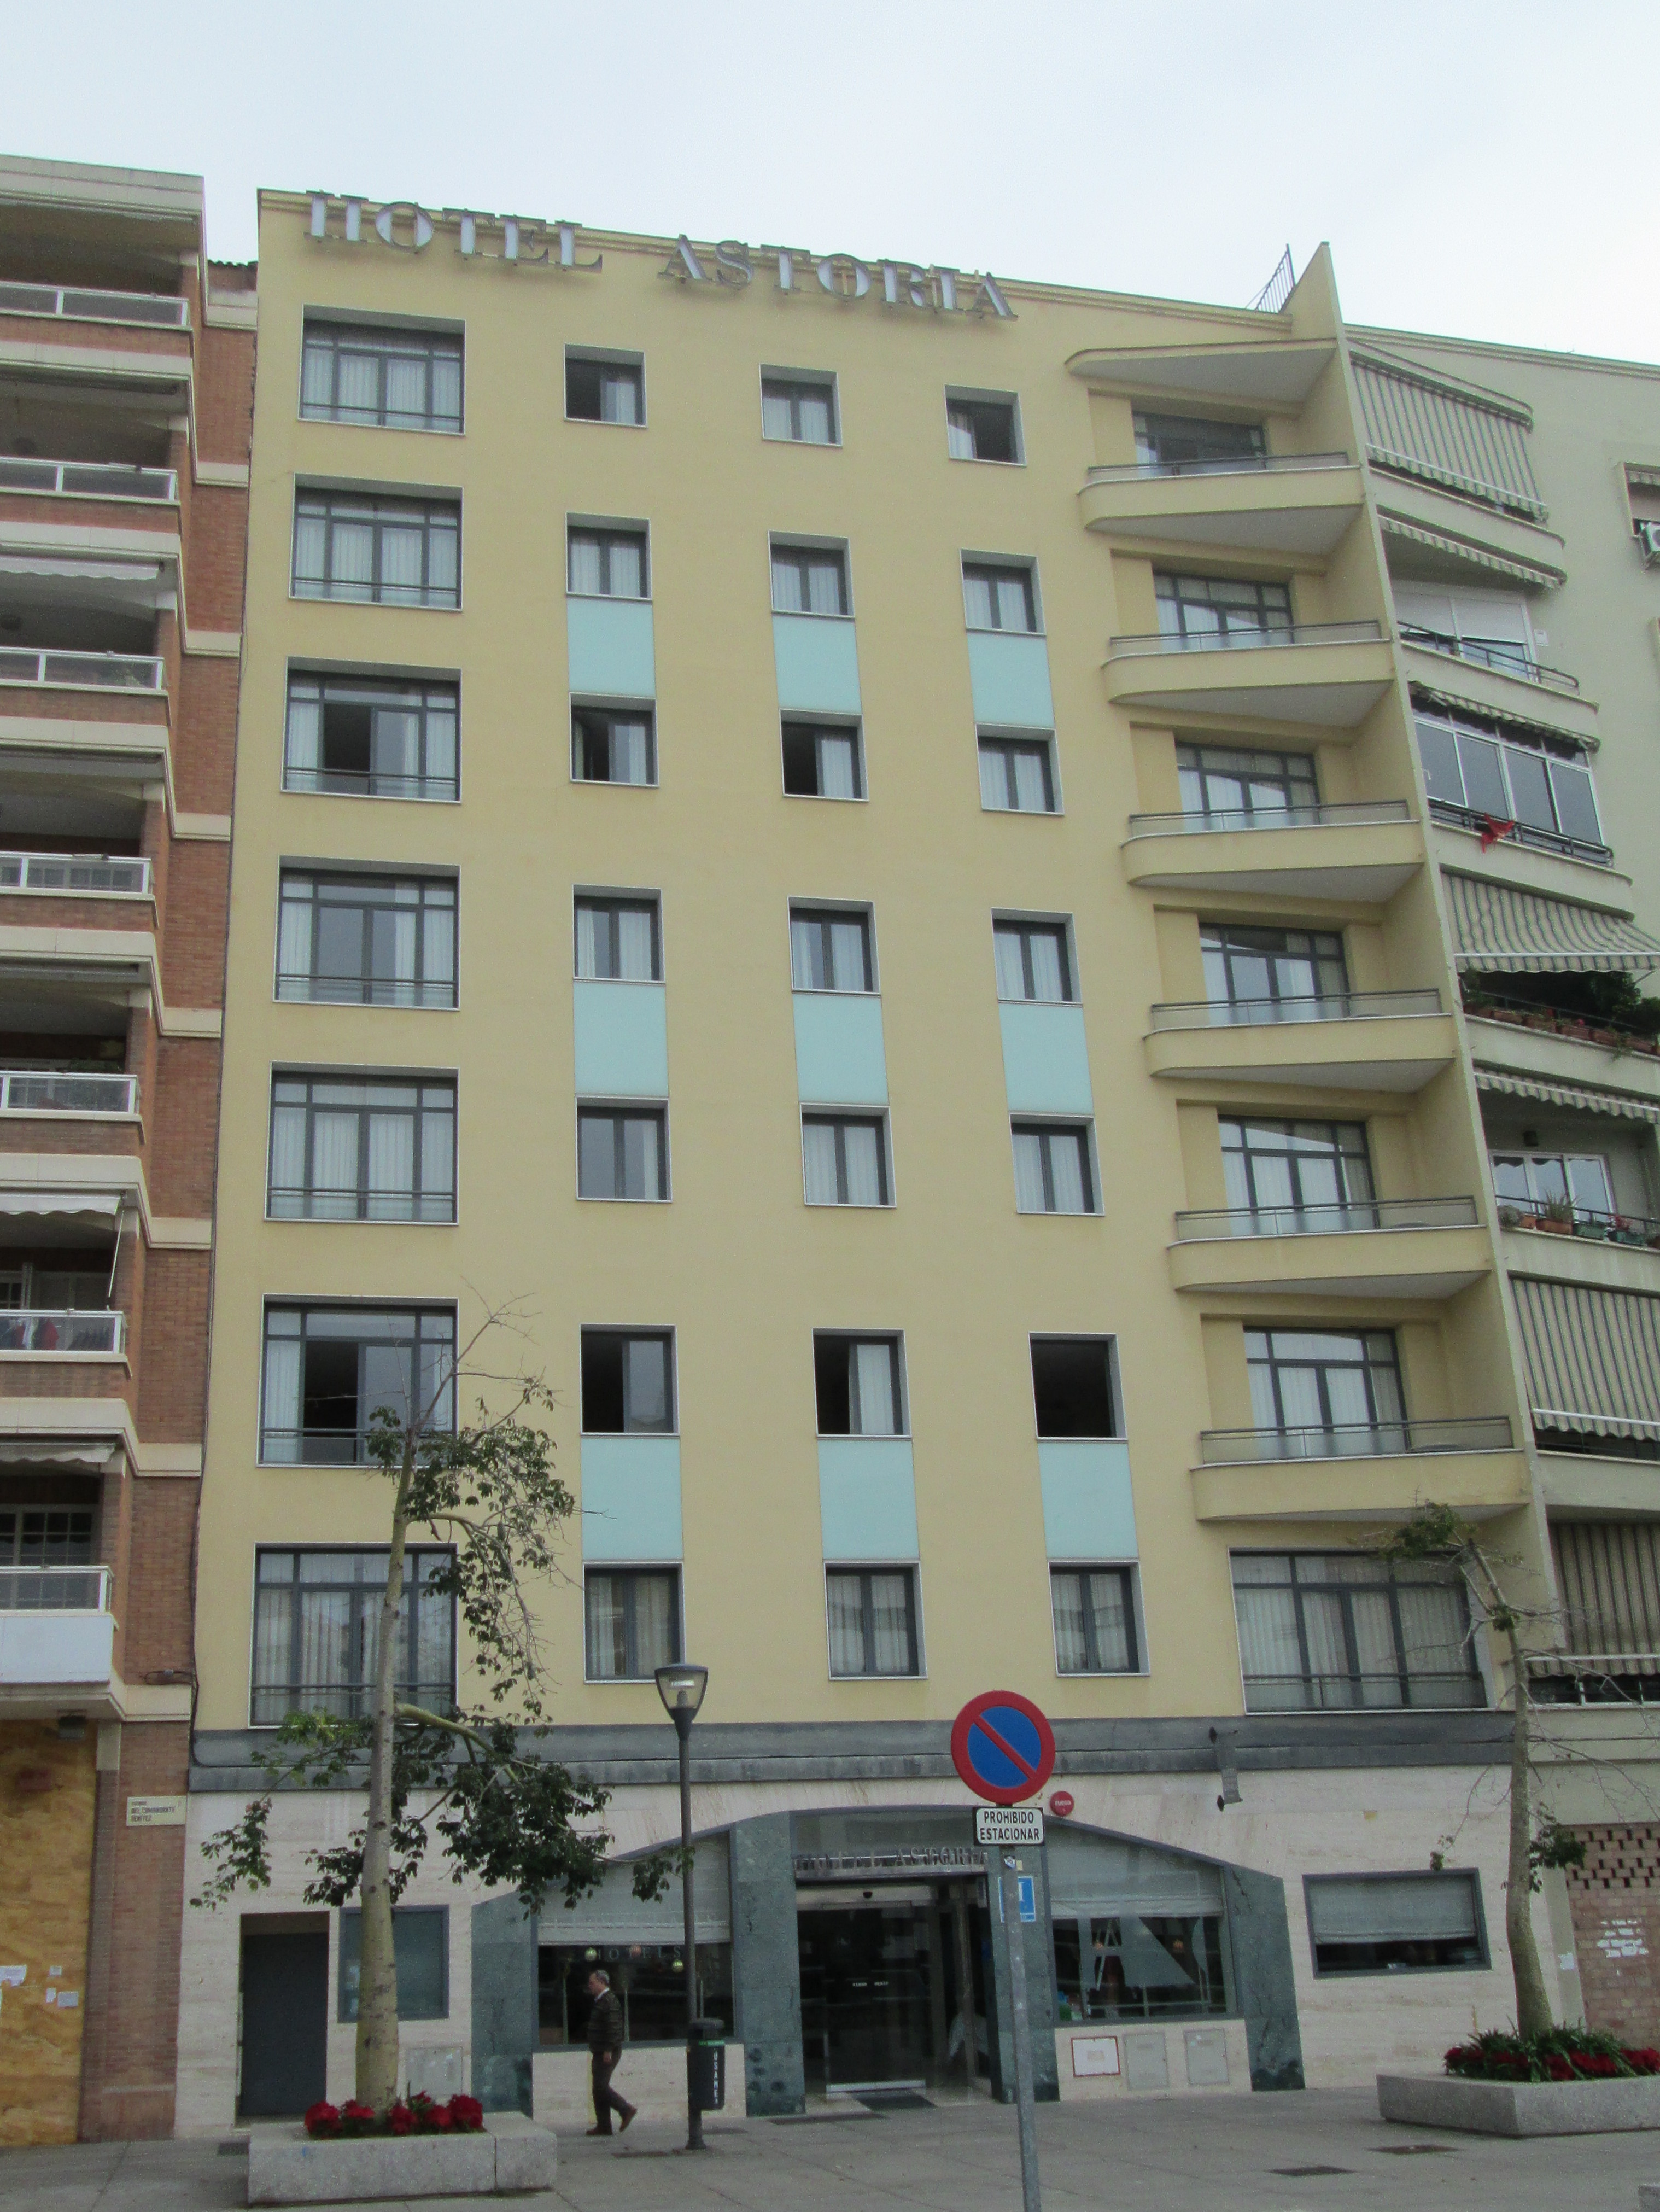 File:Hotel Astoria, Málaga.jpg - Wikimedia Commons